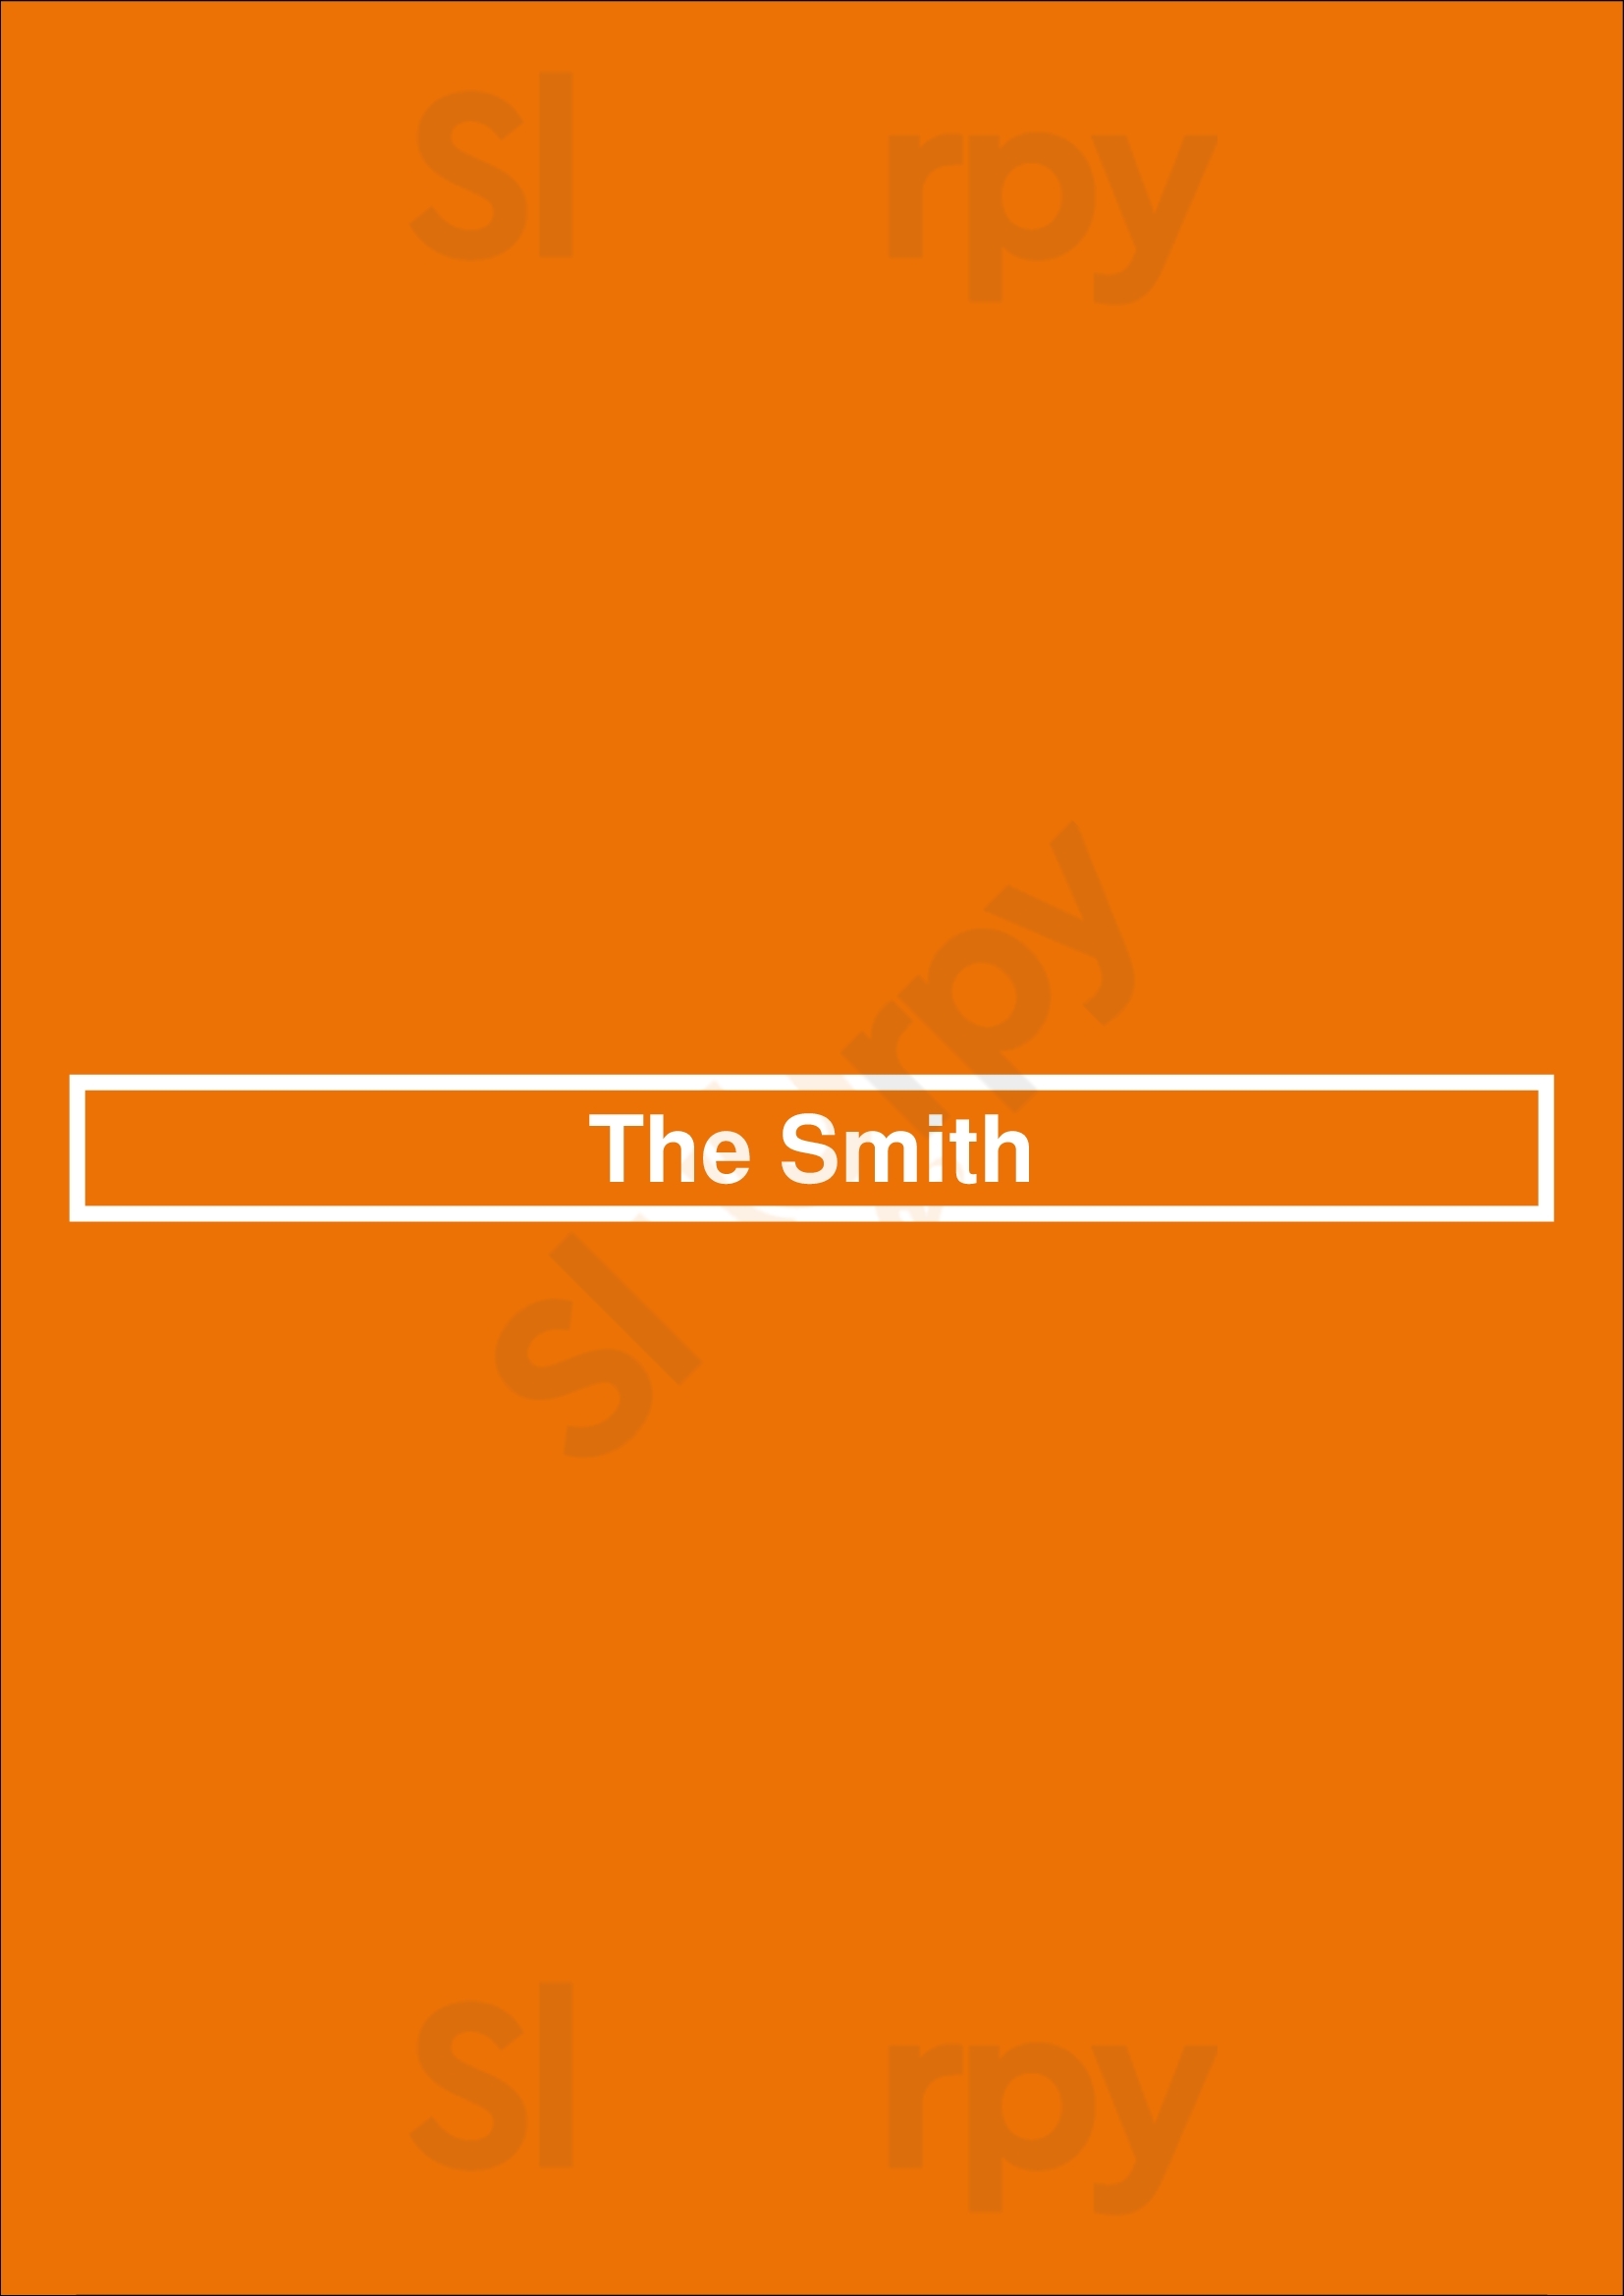 The Smith Chicago Menu - 1